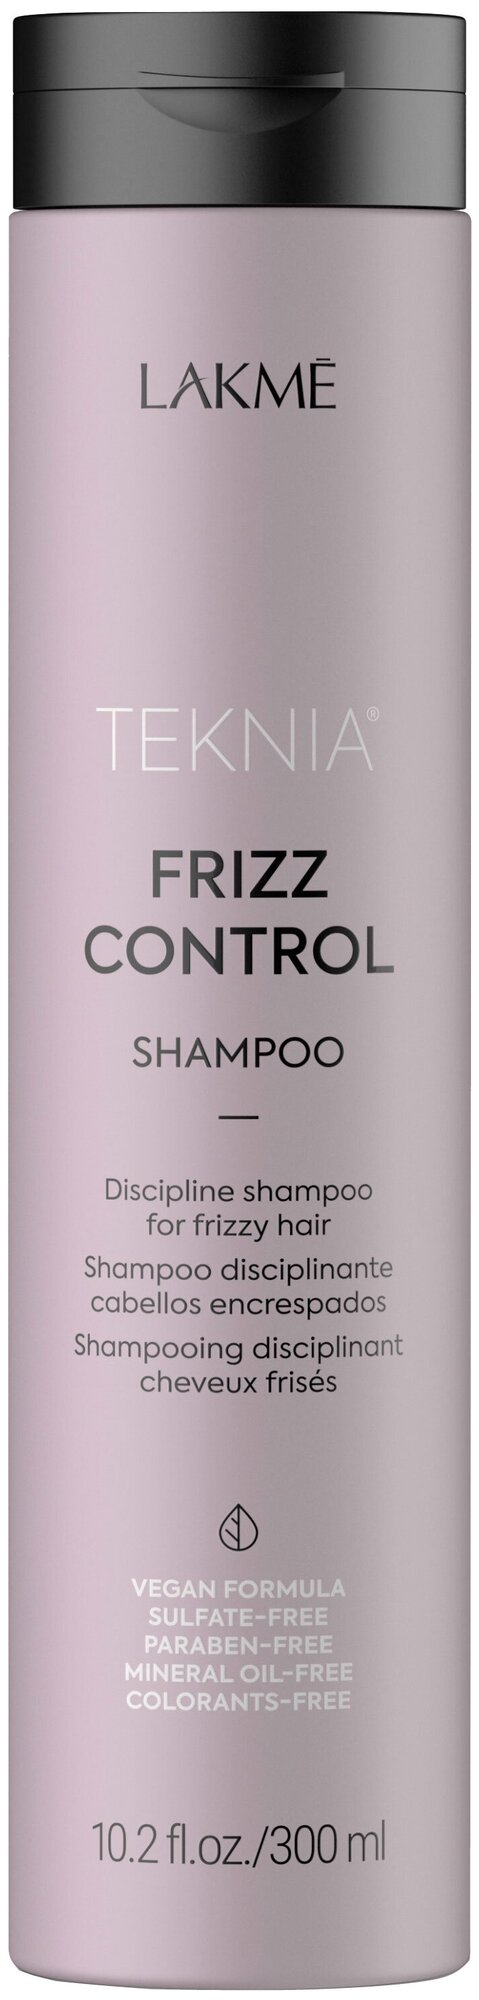 Бессульфатный дисциплинирующий шампунь для непослушных или вьющихся волос Frizz Control (44412, 300 мл) Lakme - фото №1